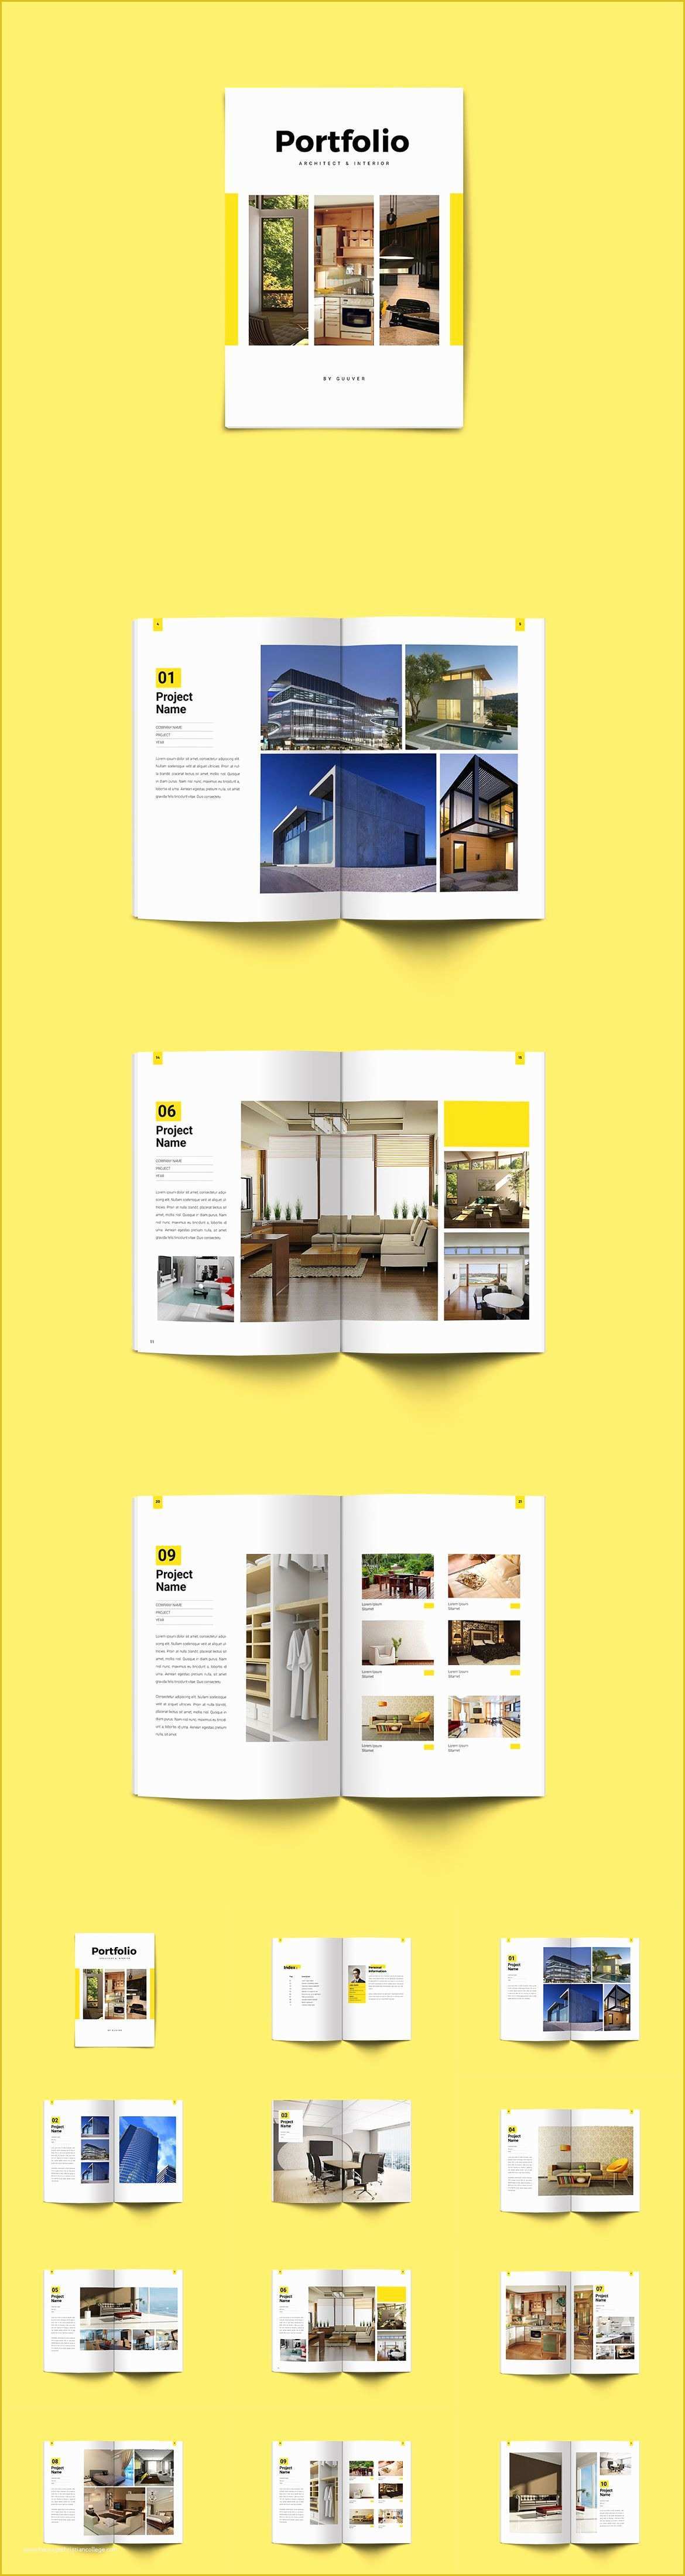 54 Architecture Portfolio Template Indesign Free ...